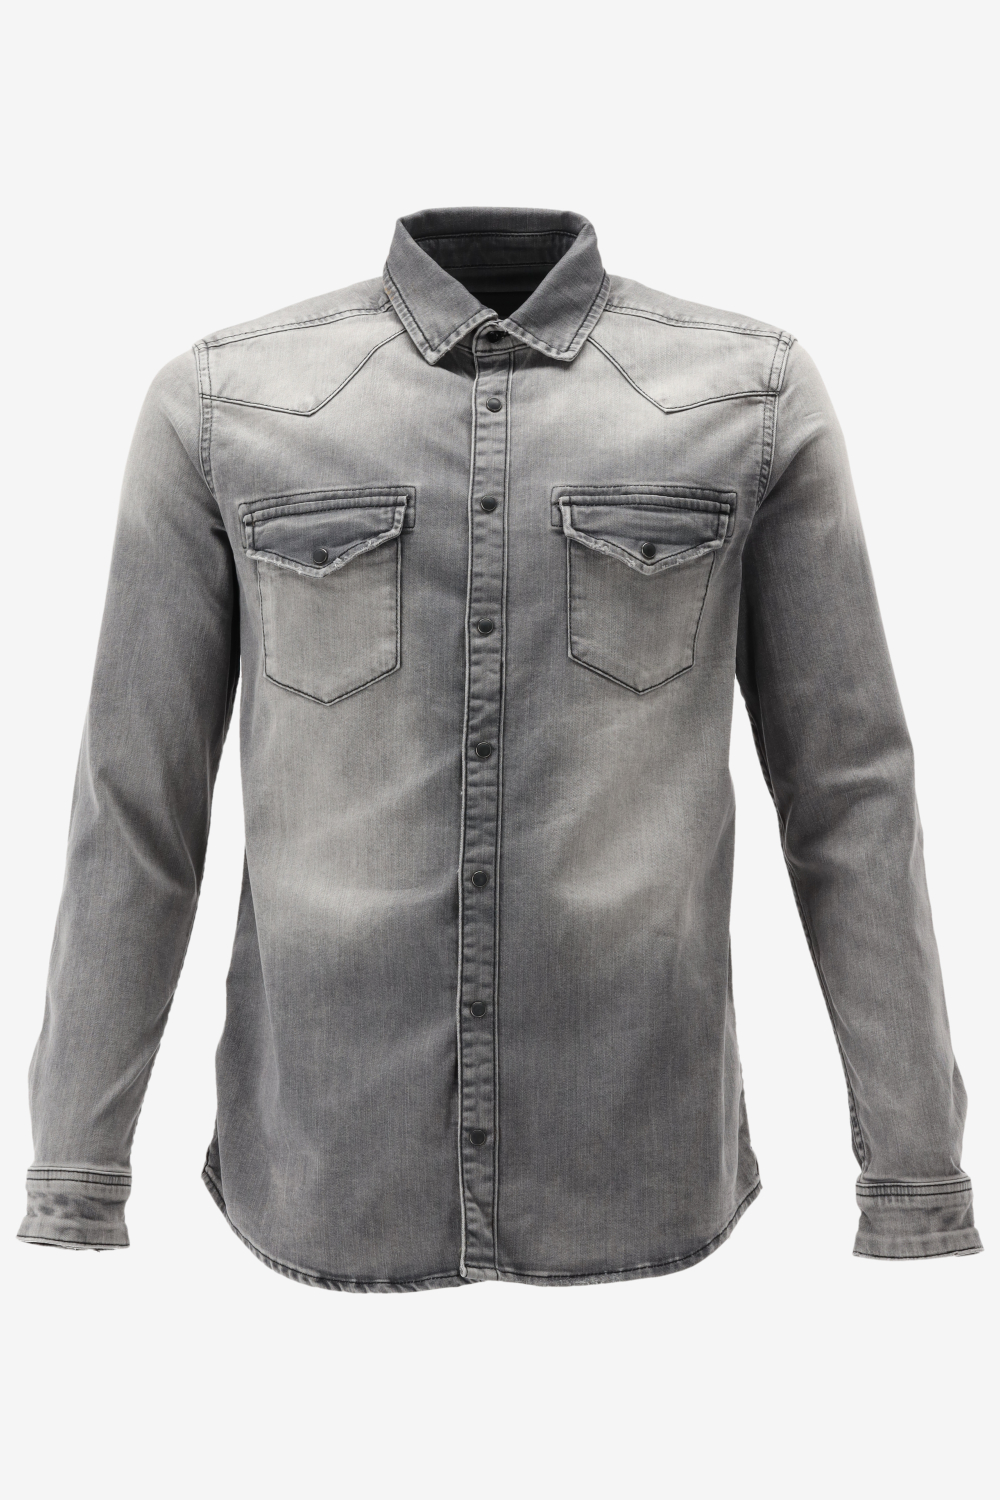 Purewhite -  Heren Slim Fit   Overhemd  - Grijs - Maat L